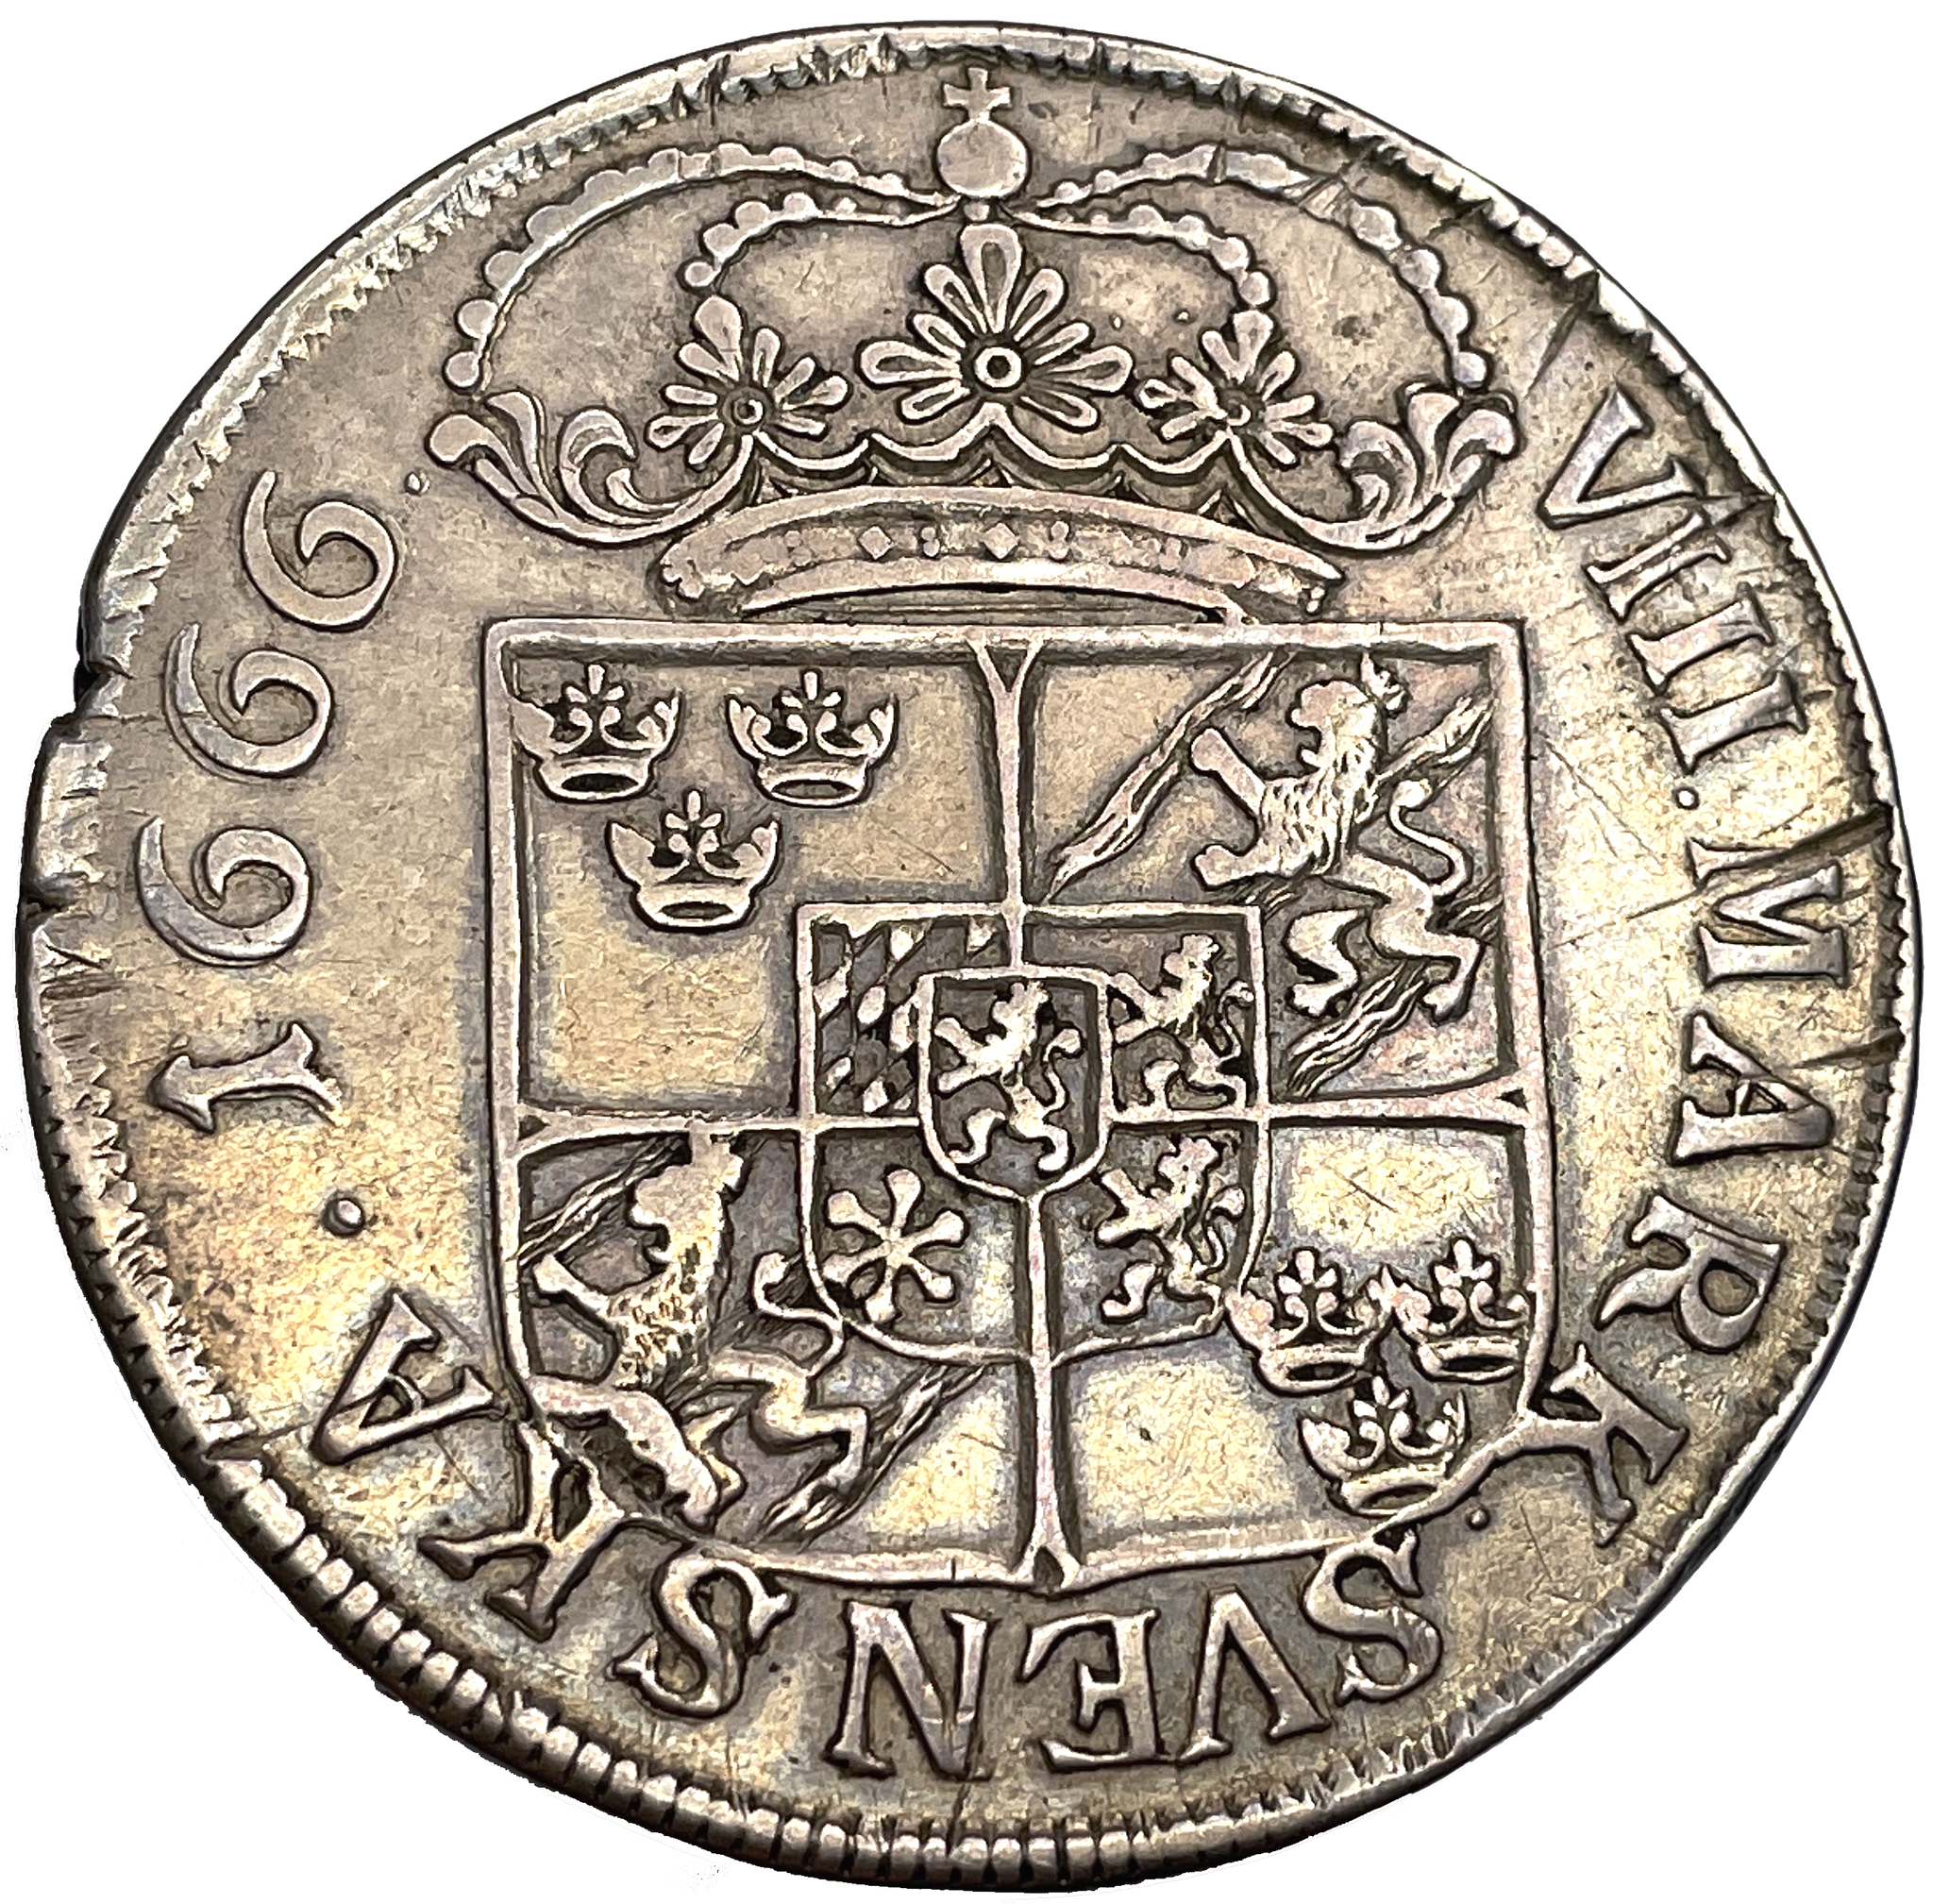 Karl XI 8 Mark 1666 - Mindre bild, delad omskrift, stor krona - RAR - 13 ex i privat ägo